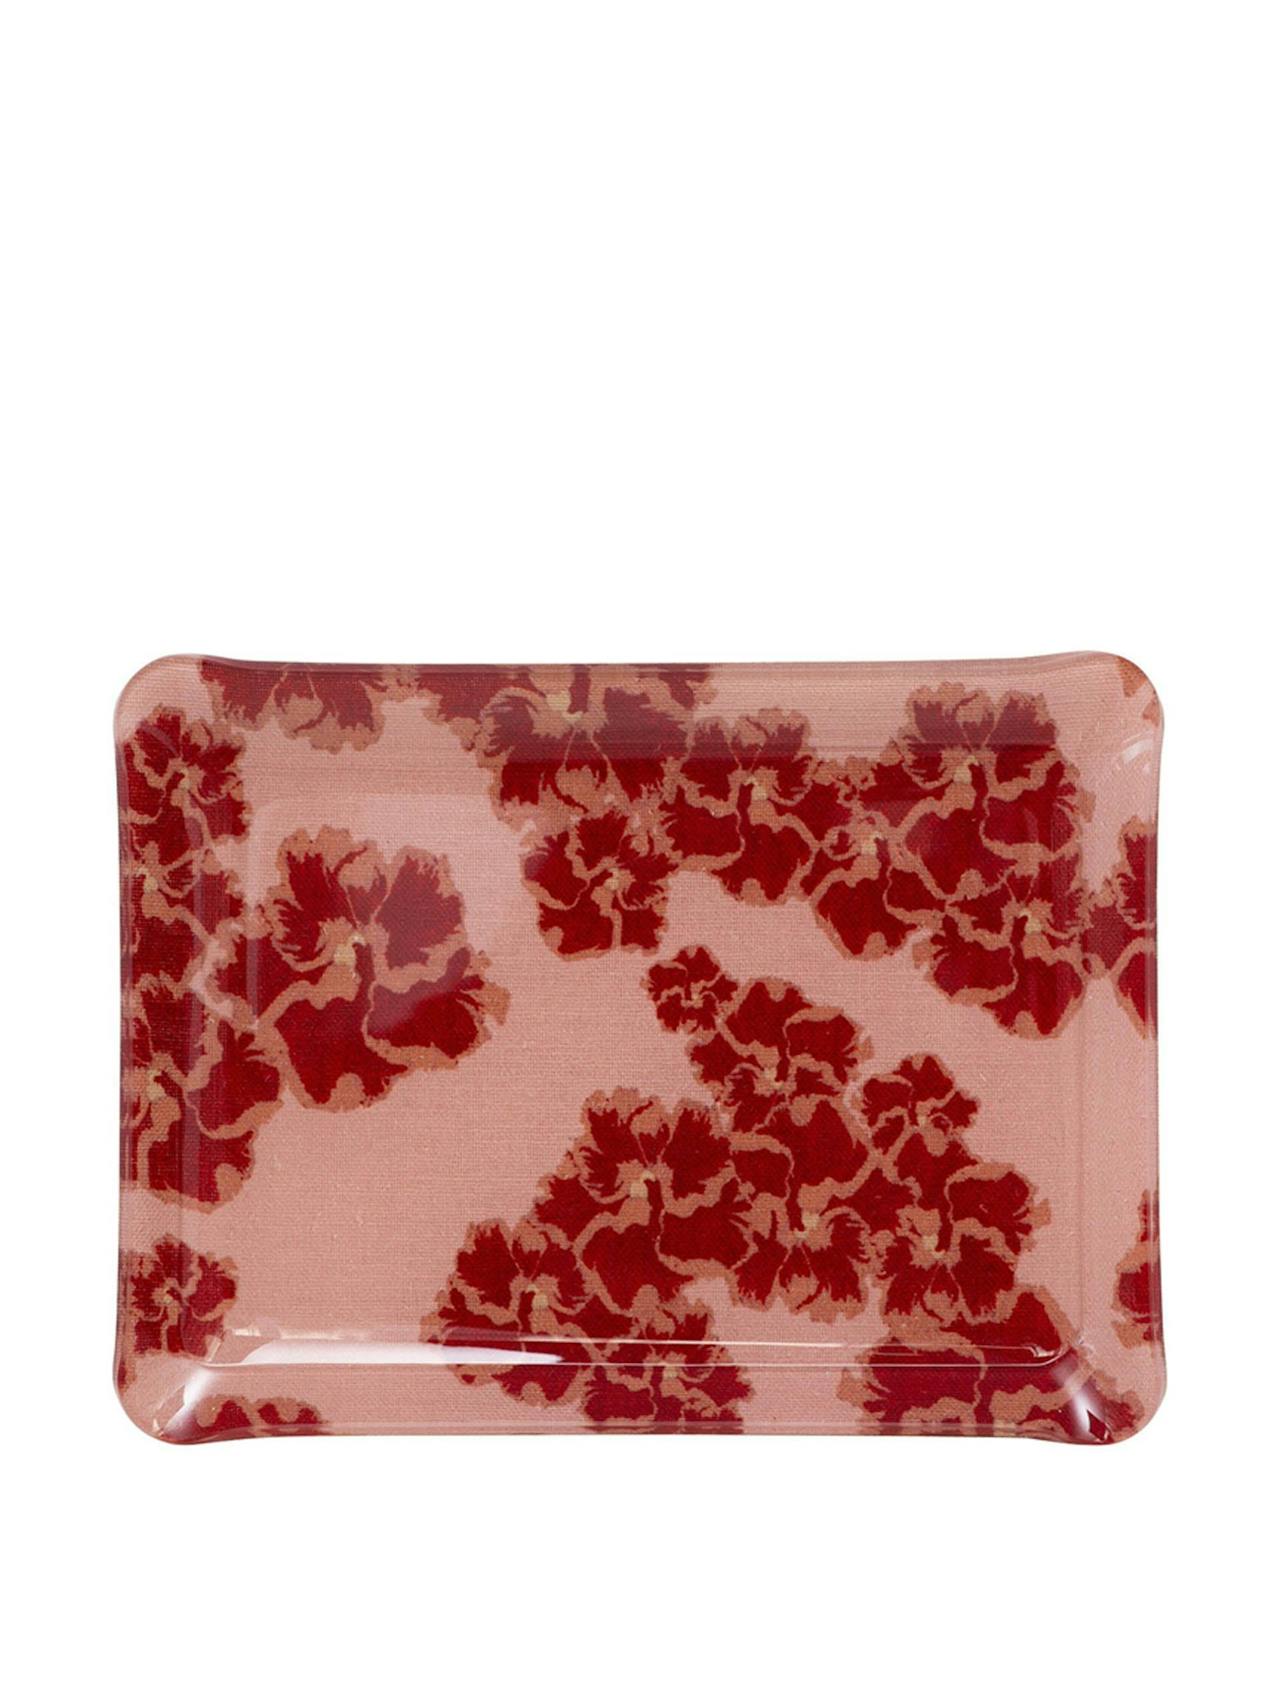 Rose mallow acrylic midi tray